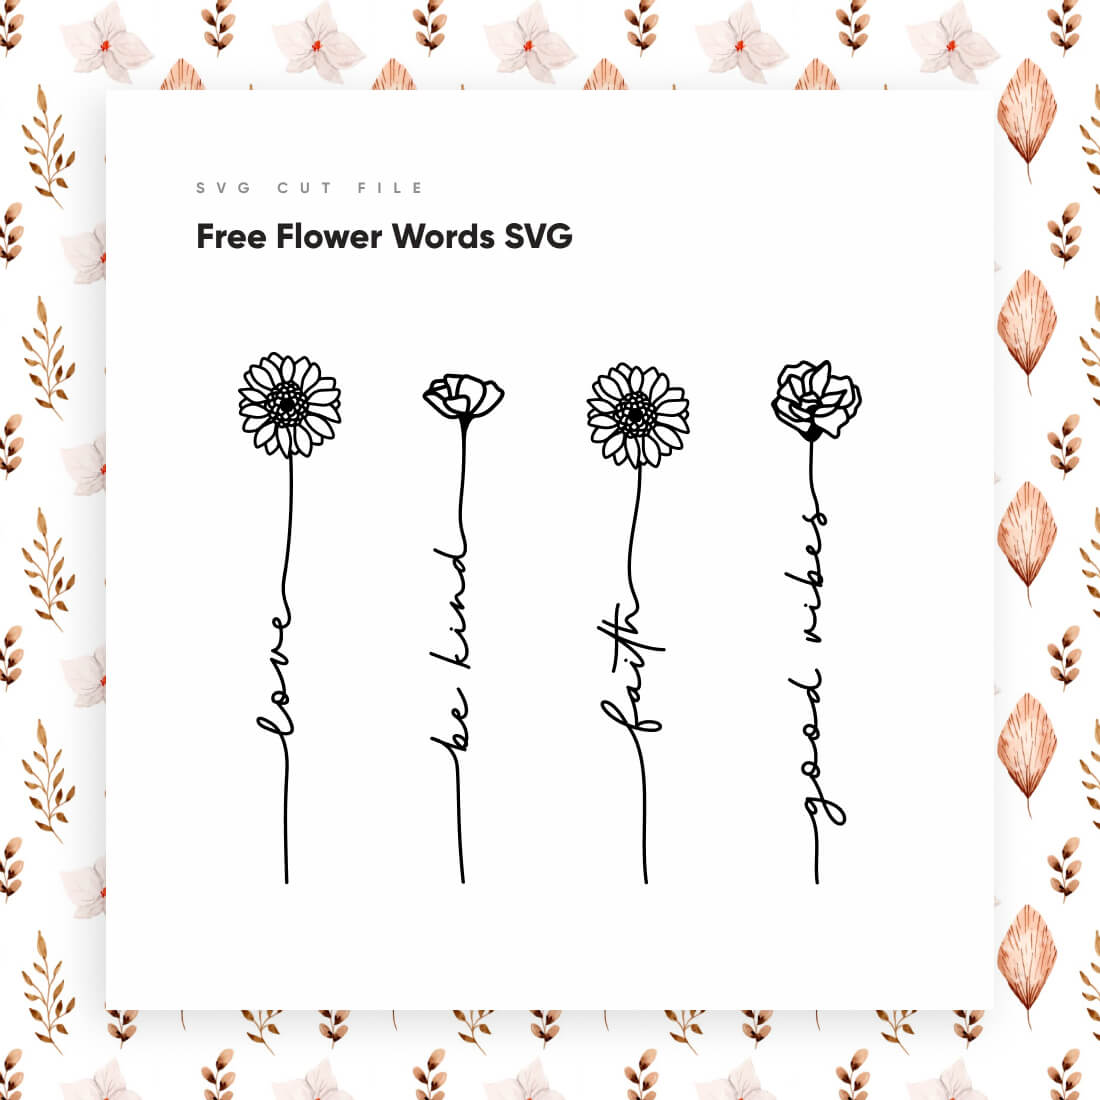 Free Flower Words SVG facebook.